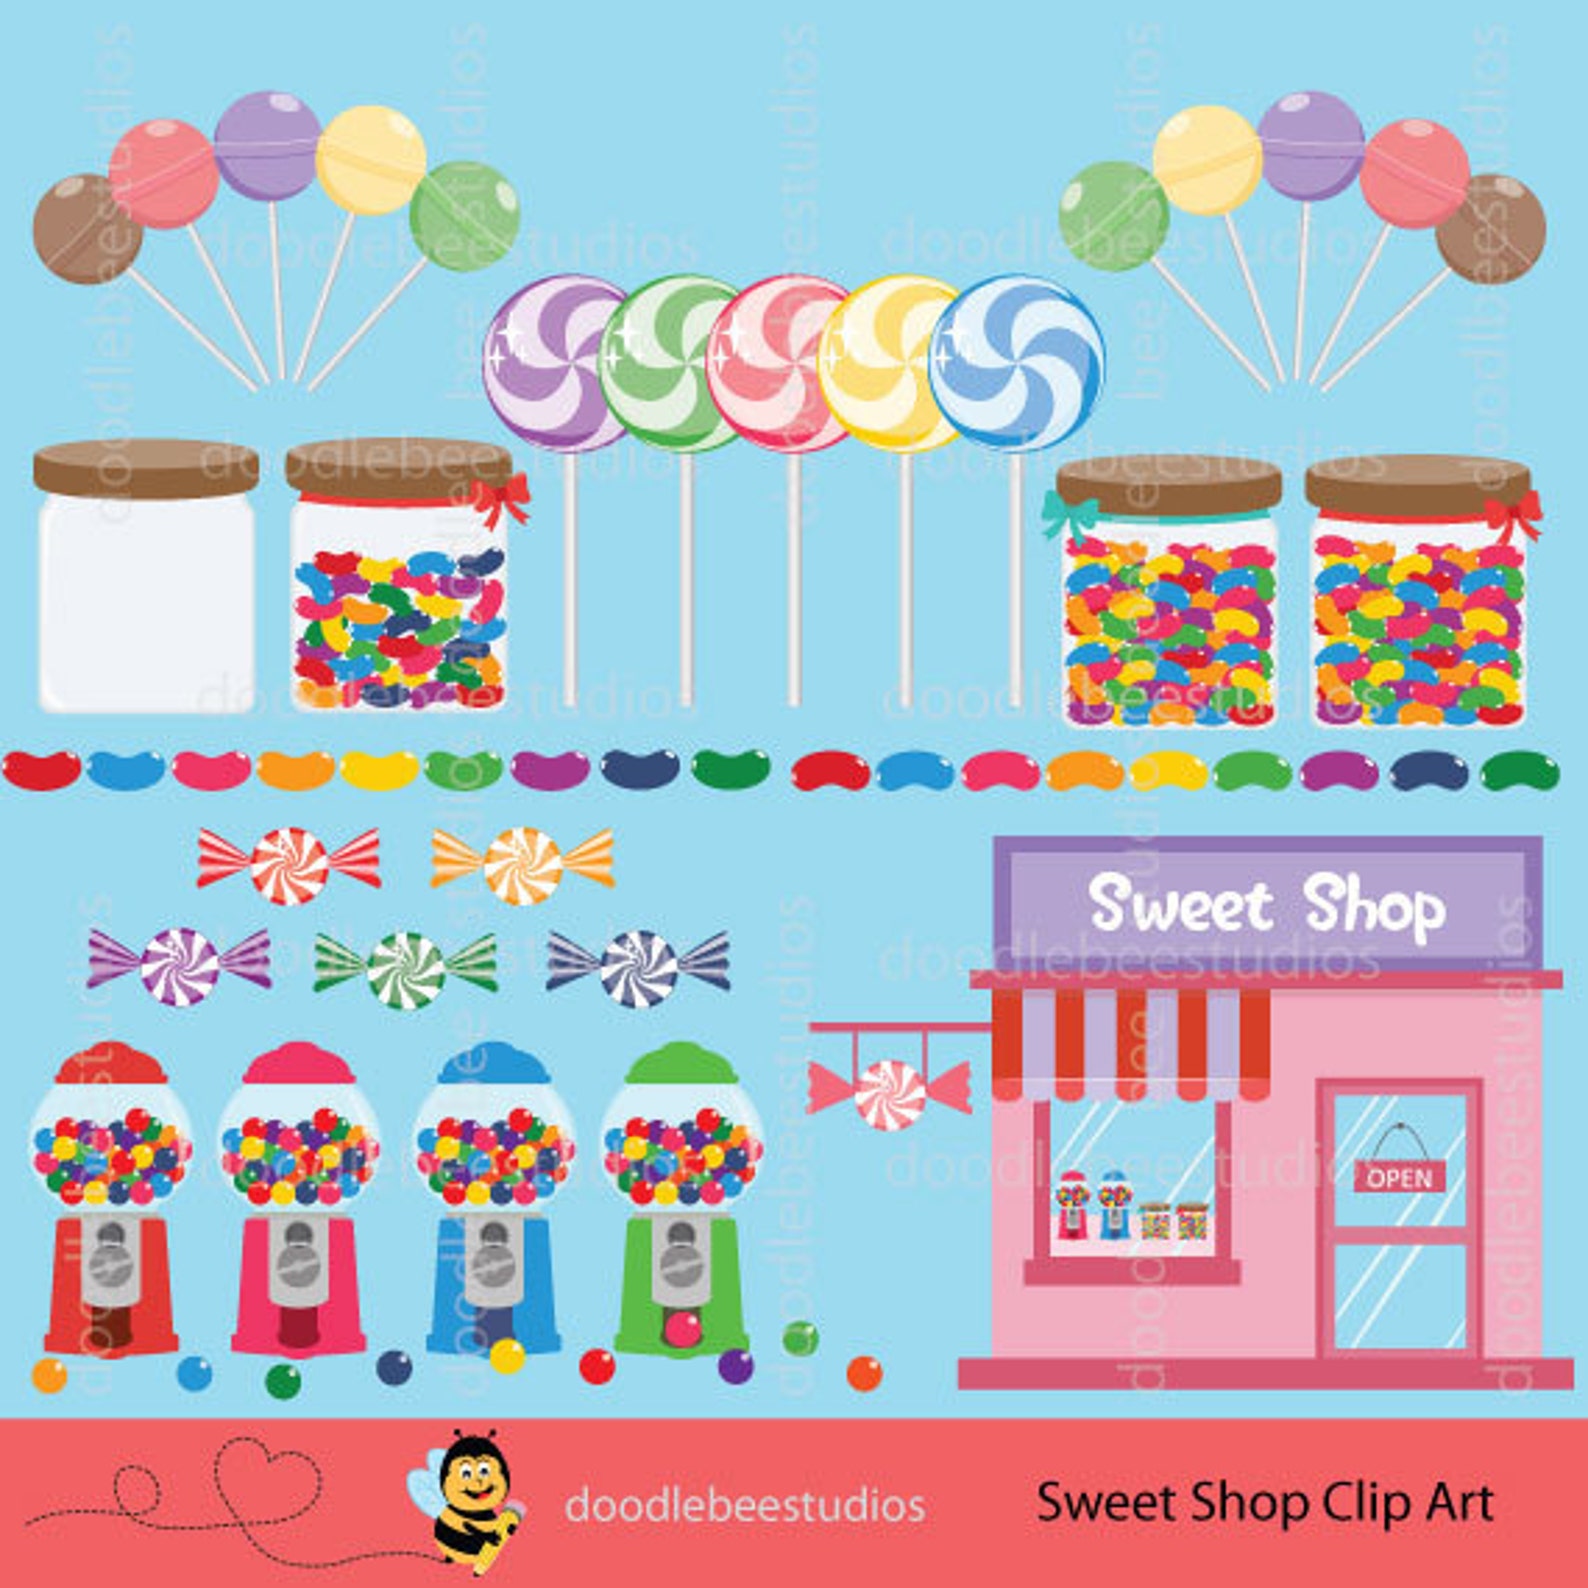 Sweet shop. Картинки на стену для магазина сладостей. Sweet shop Clipart. Sweet shop аватарки. Плакат магазина сладостей игрушек.